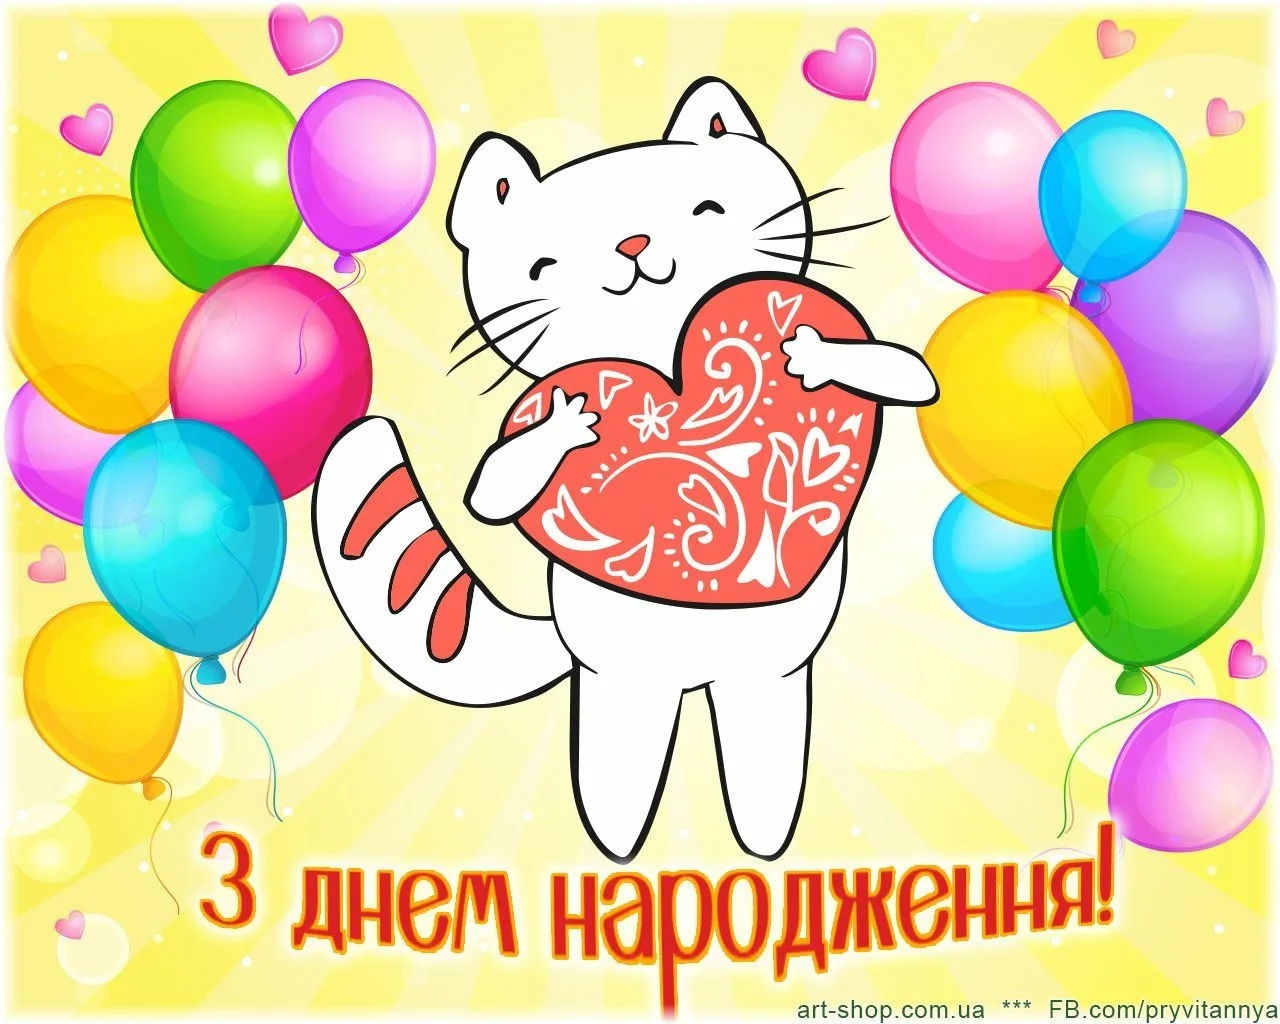 Фото Привітання з днем народження на українській мові #66